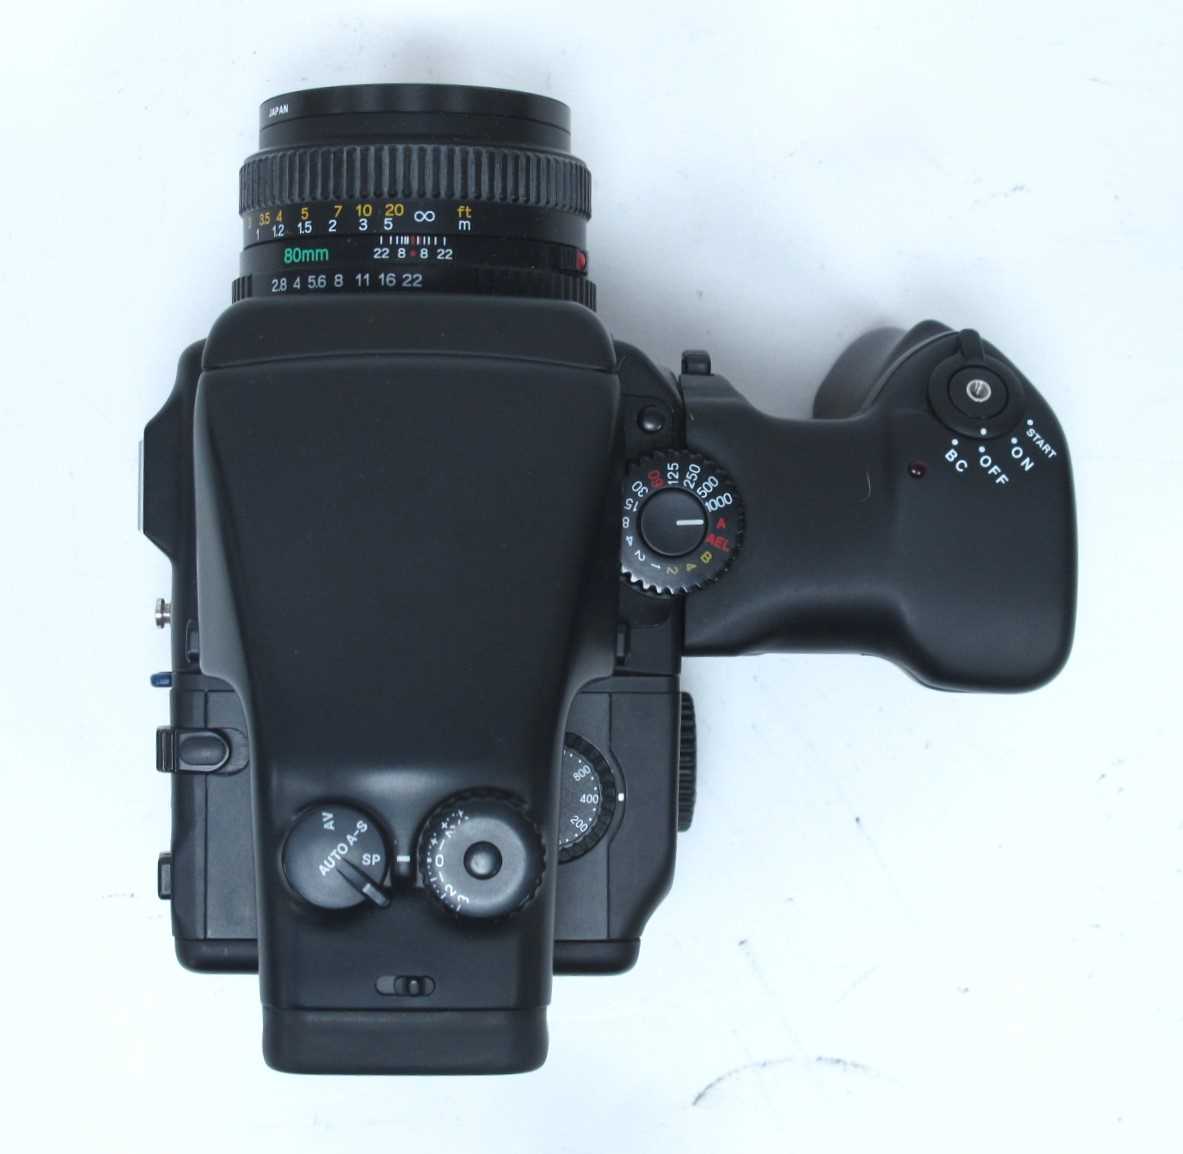 Mamiya 645 Pro Camera, having Mamiya - Sekor 80mm lens 1:2.8, extra 150mm 1:3.5 and 55mm 1:2.8 - Image 8 of 10